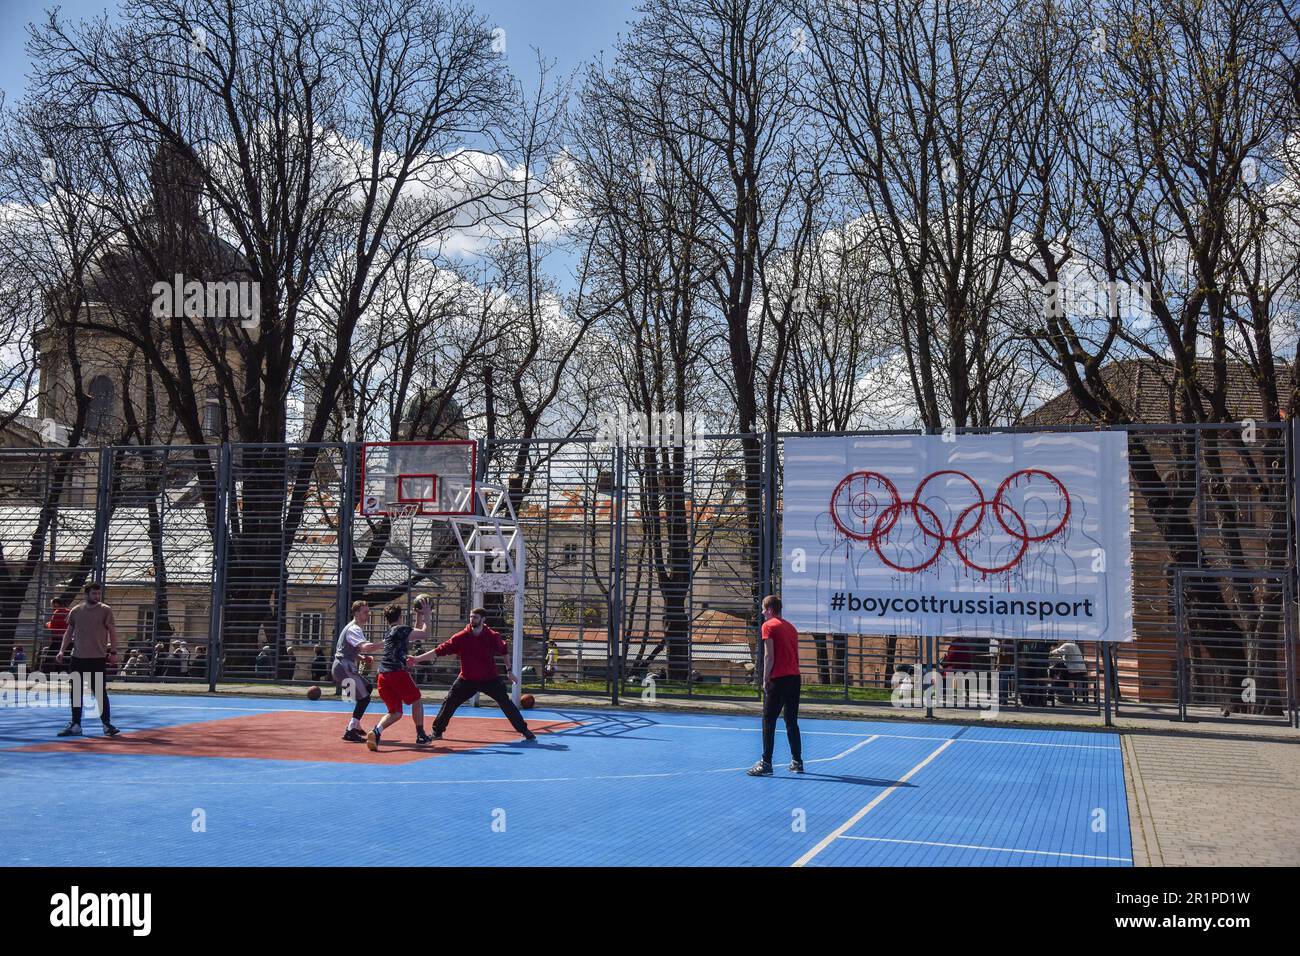 Die Leute spielen Basketball auf einem Banner mit der Inschrift #BoycottRussianSport auf einem der Sportplätze in Lemberg. Die Ukraine und viele Länder auf der ganzen Welt fordern, dass russische Athleten wegen des von Russland ausgelösten russisch-ukrainischen Krieges von den Olympischen Spielen und anderen internationalen Wettkämpfen ausgeschlossen werden. Viele ukrainische Athleten, die die Ukraine vor dem russischen Aggressor verteidigten, sind bereits in diesem Krieg gestorben. Zur Unterstützung des Boykotts wurde ein Banner mit der Aufschrift #BoycottRussianSport auf einem der Sportplätze in Lemberg aufgehängt. Stockfoto